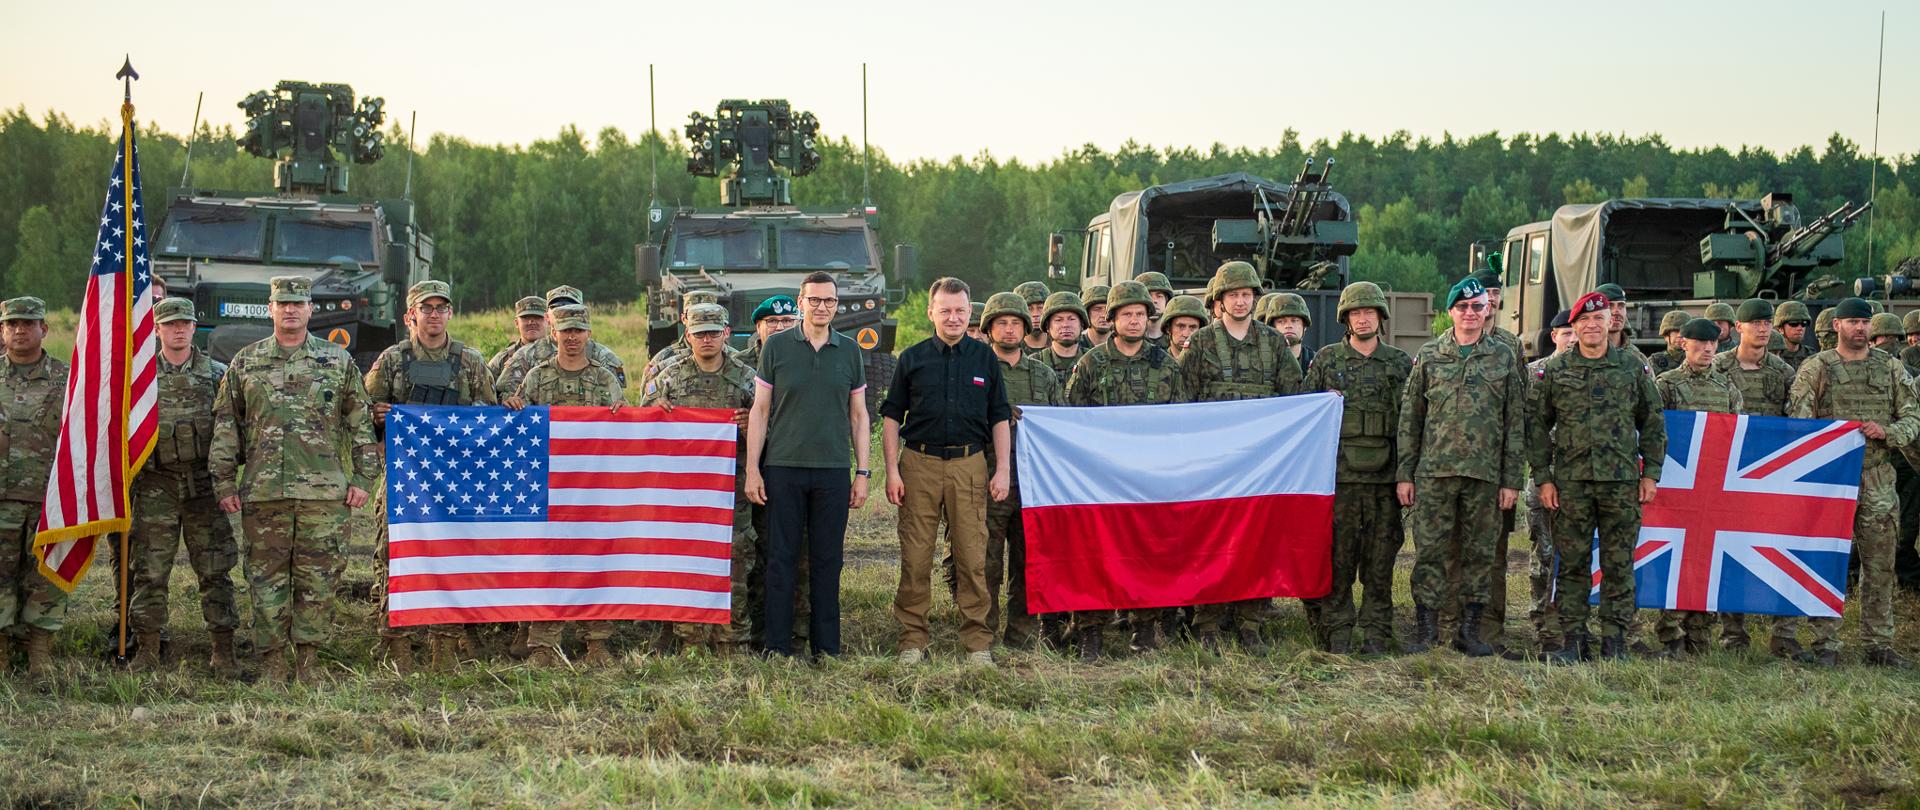 3 lipca 2022 r., na terenie poligonu w Orzyszu, premier Mateusz Morawiecki i Mariusz Błaszczak, wicepremier, minister obrony narodowej spotkali się z żołnierzami wielonarodowej grupy bojowej eFP NATO.